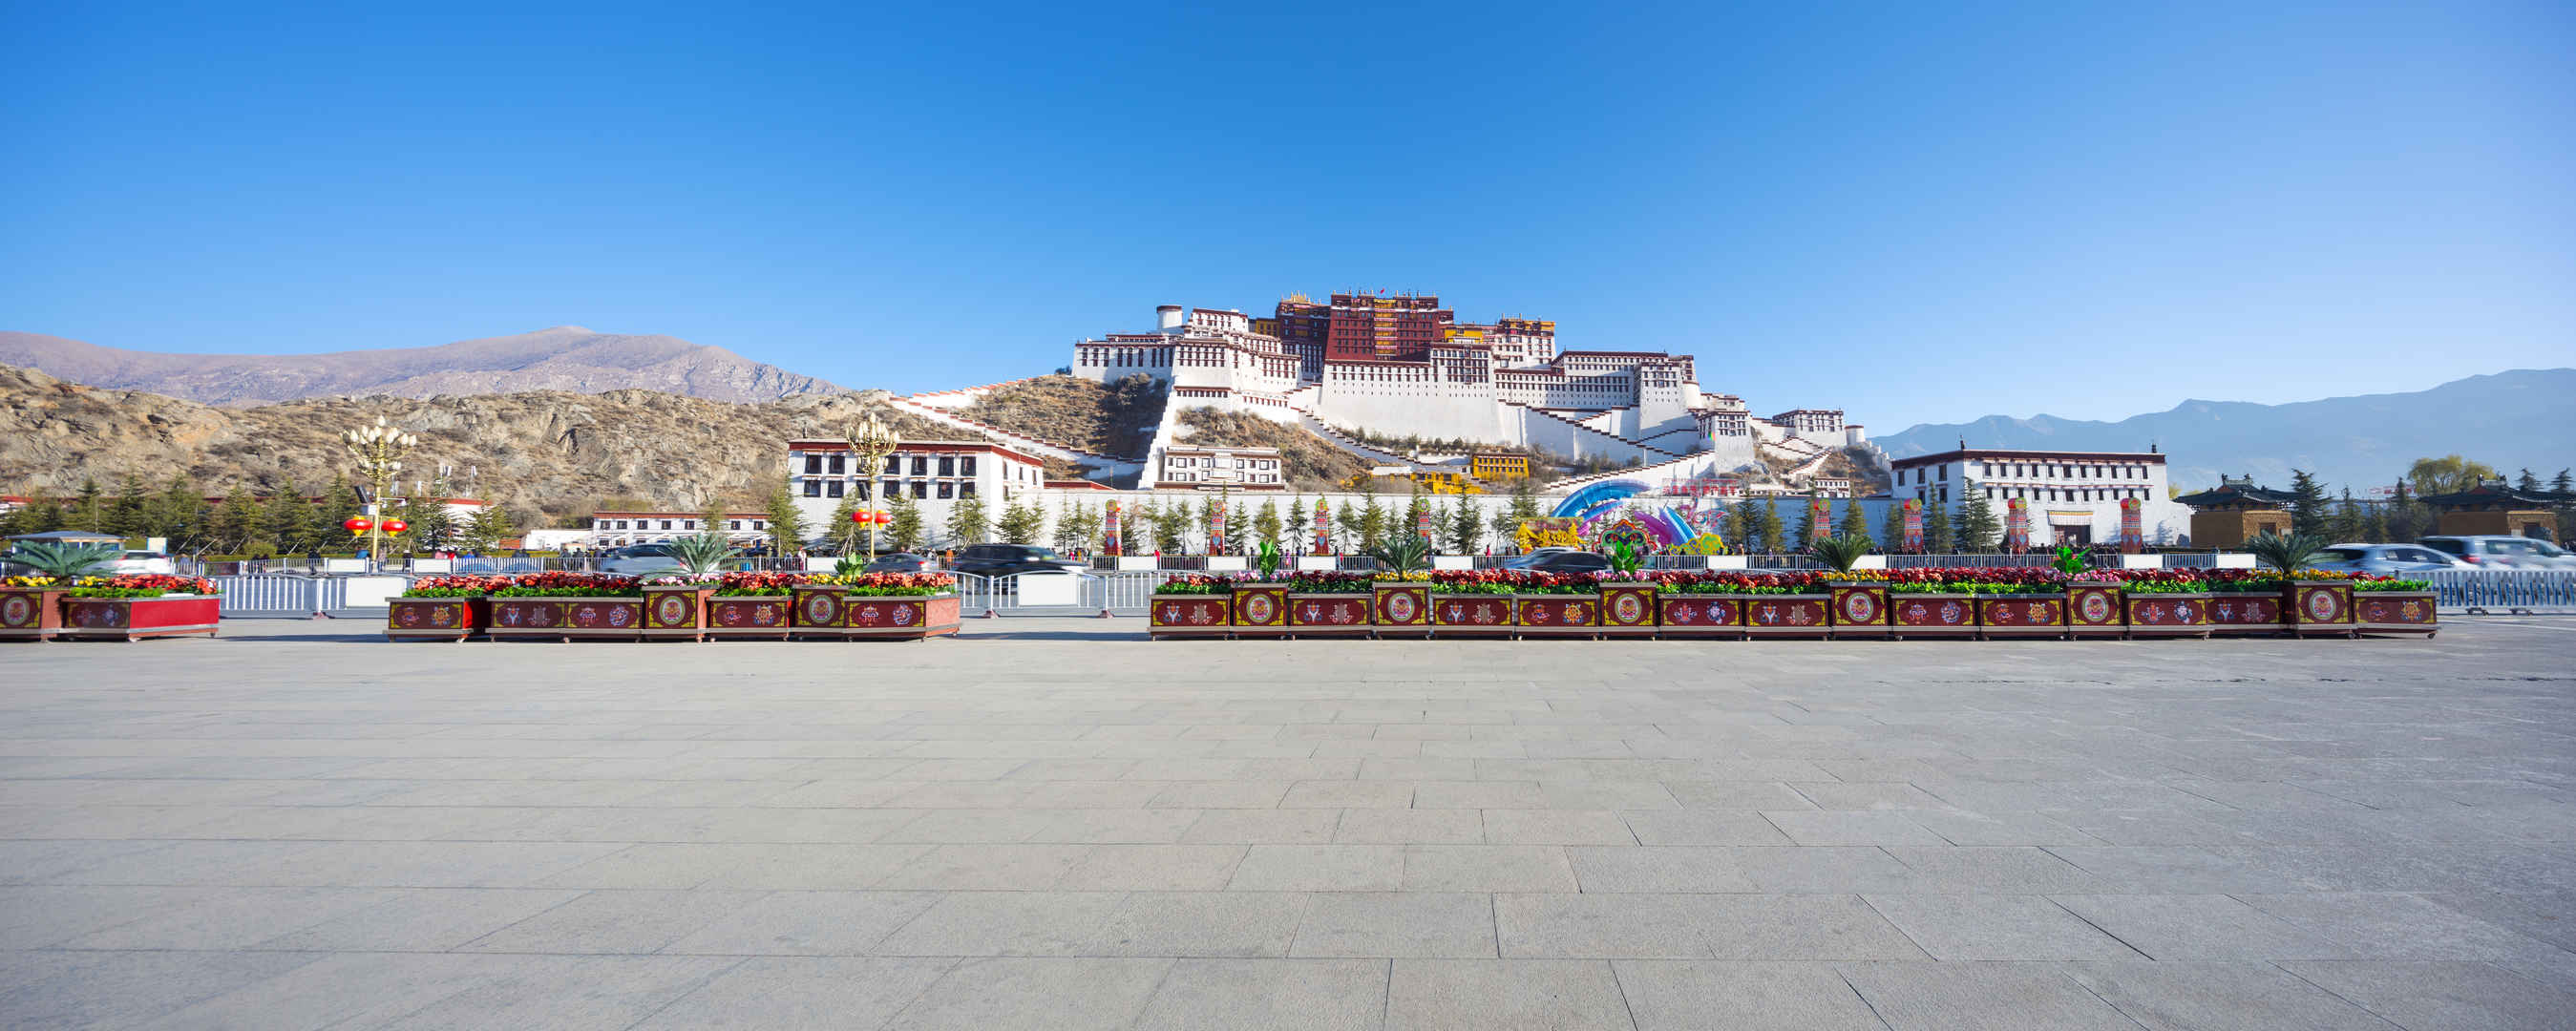 中国西藏布达拉宫风景图